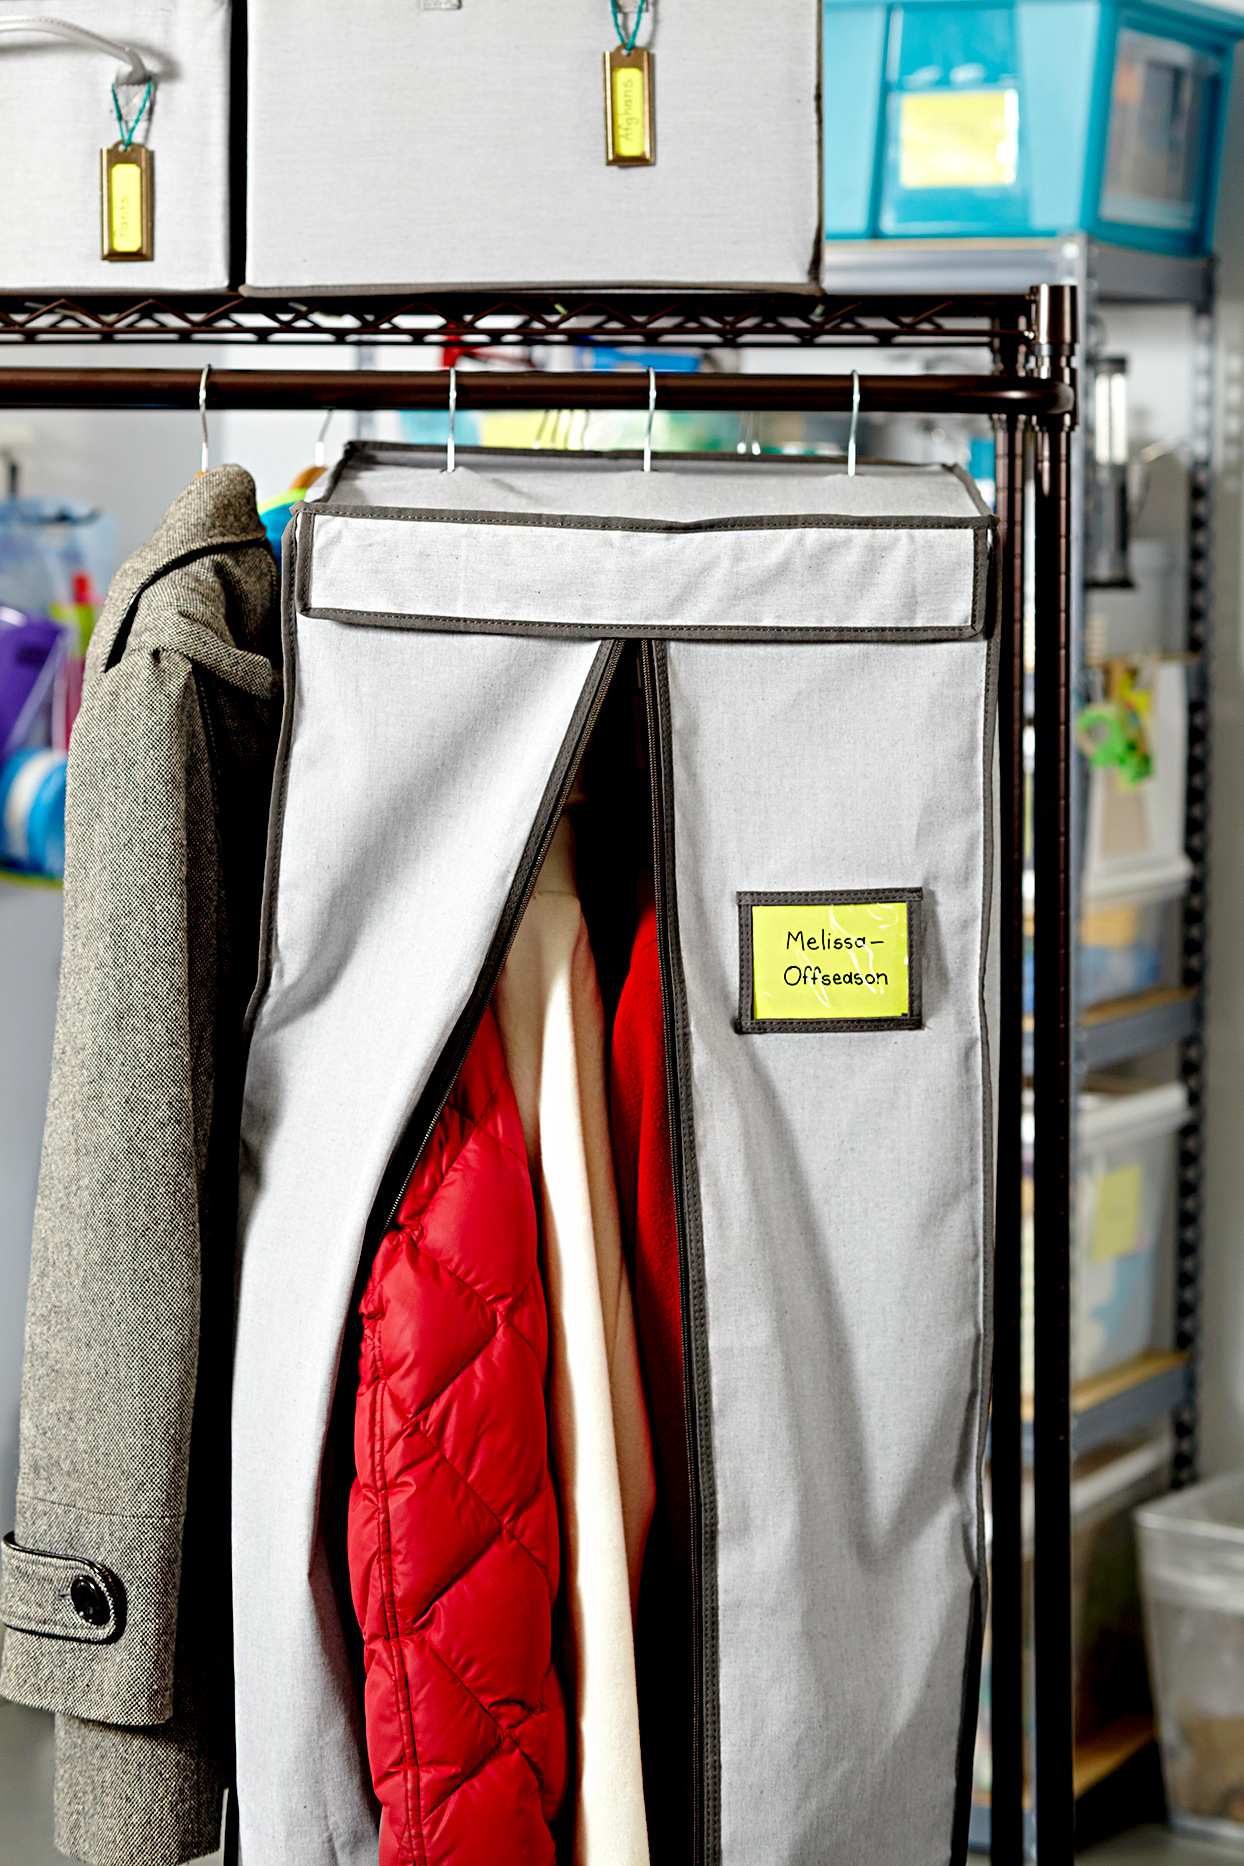 Áo khoác cồng kềnh không thích hợp để lưu trữ trong tủ quần áo.